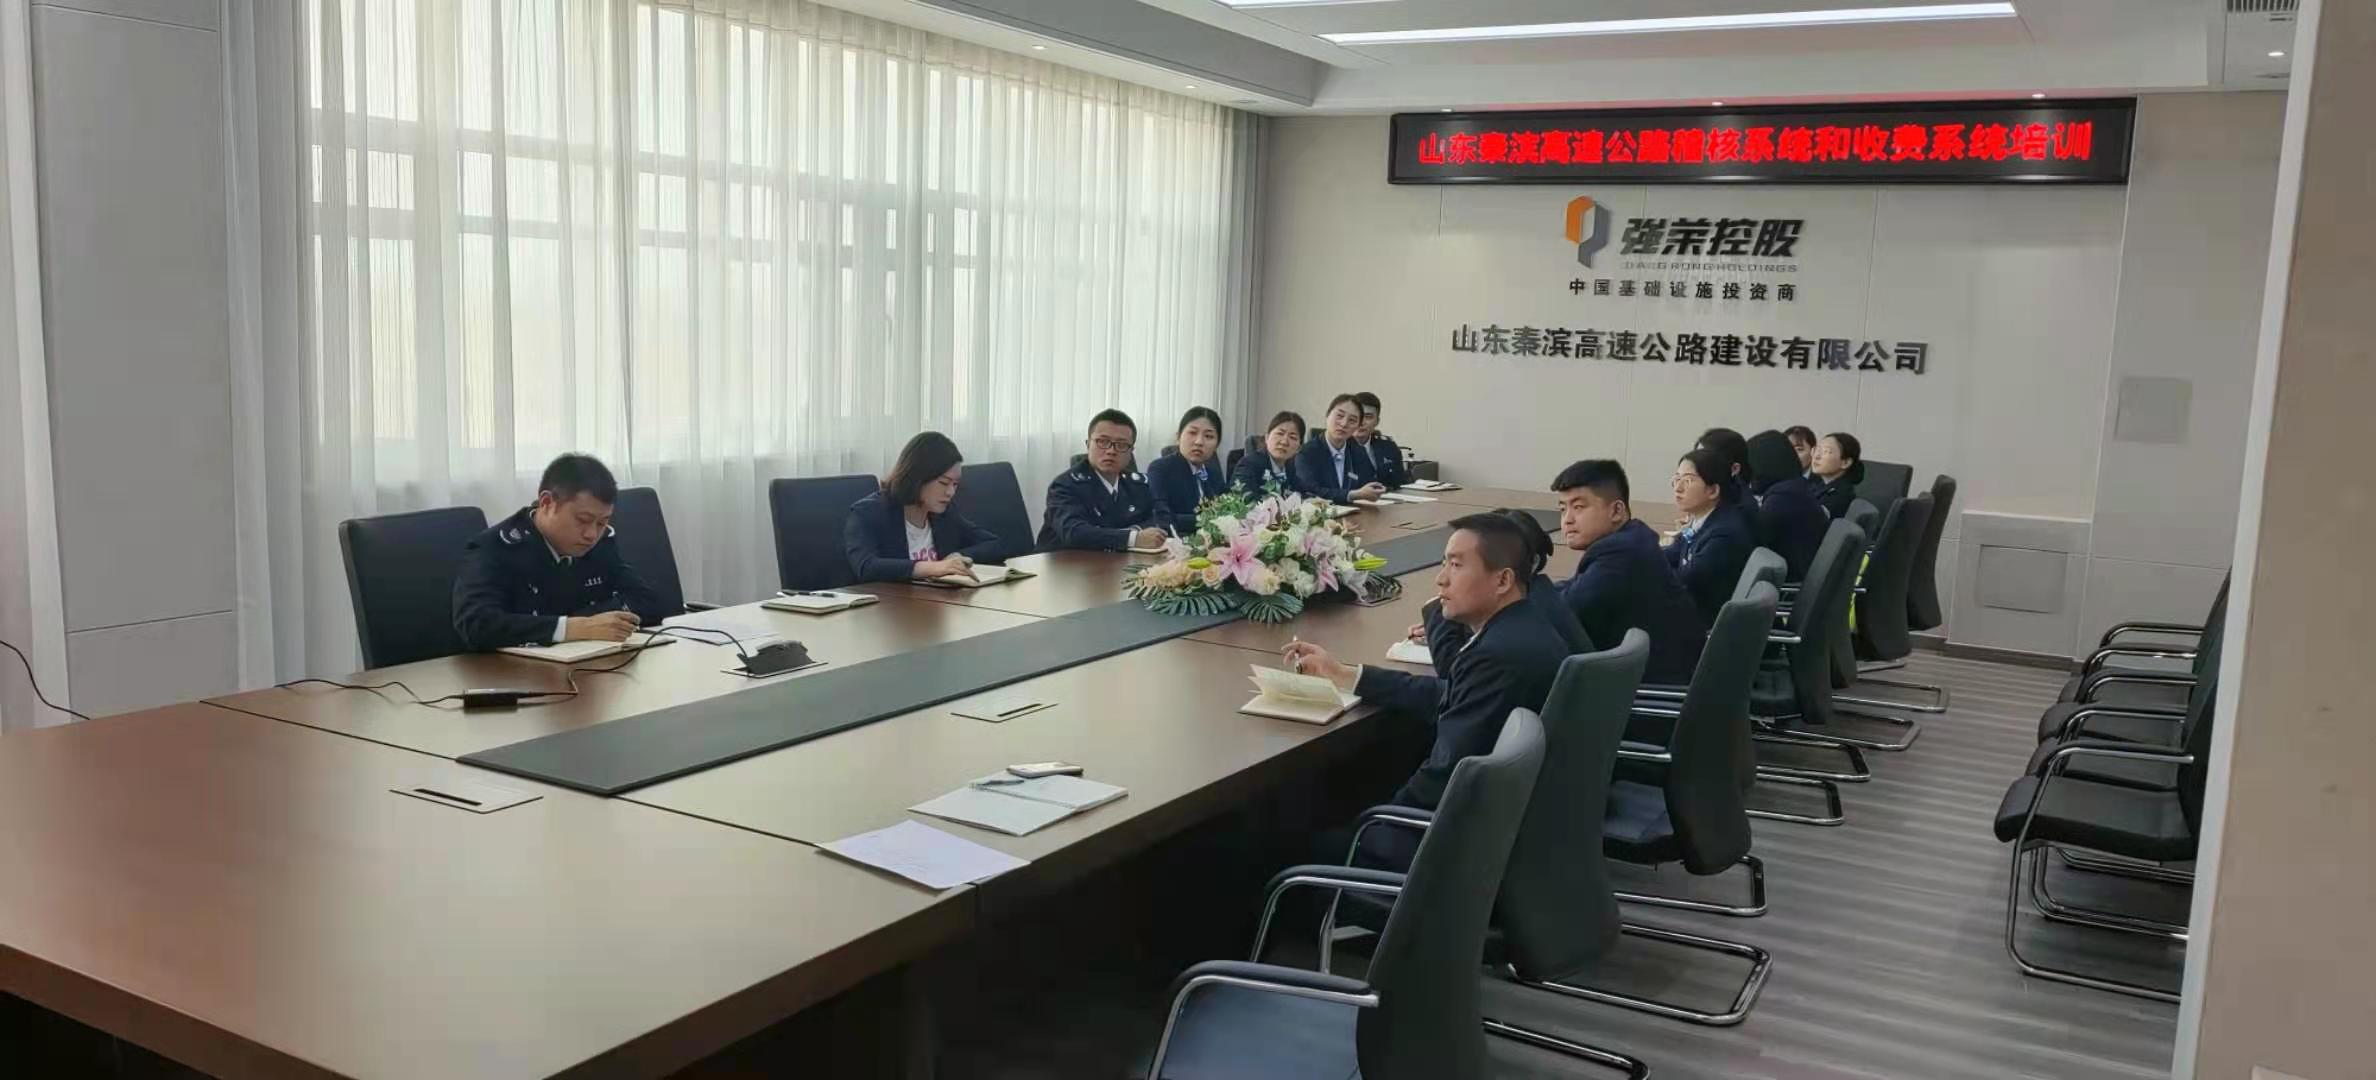 秦滨公司开展稽核系统和收费系统培训